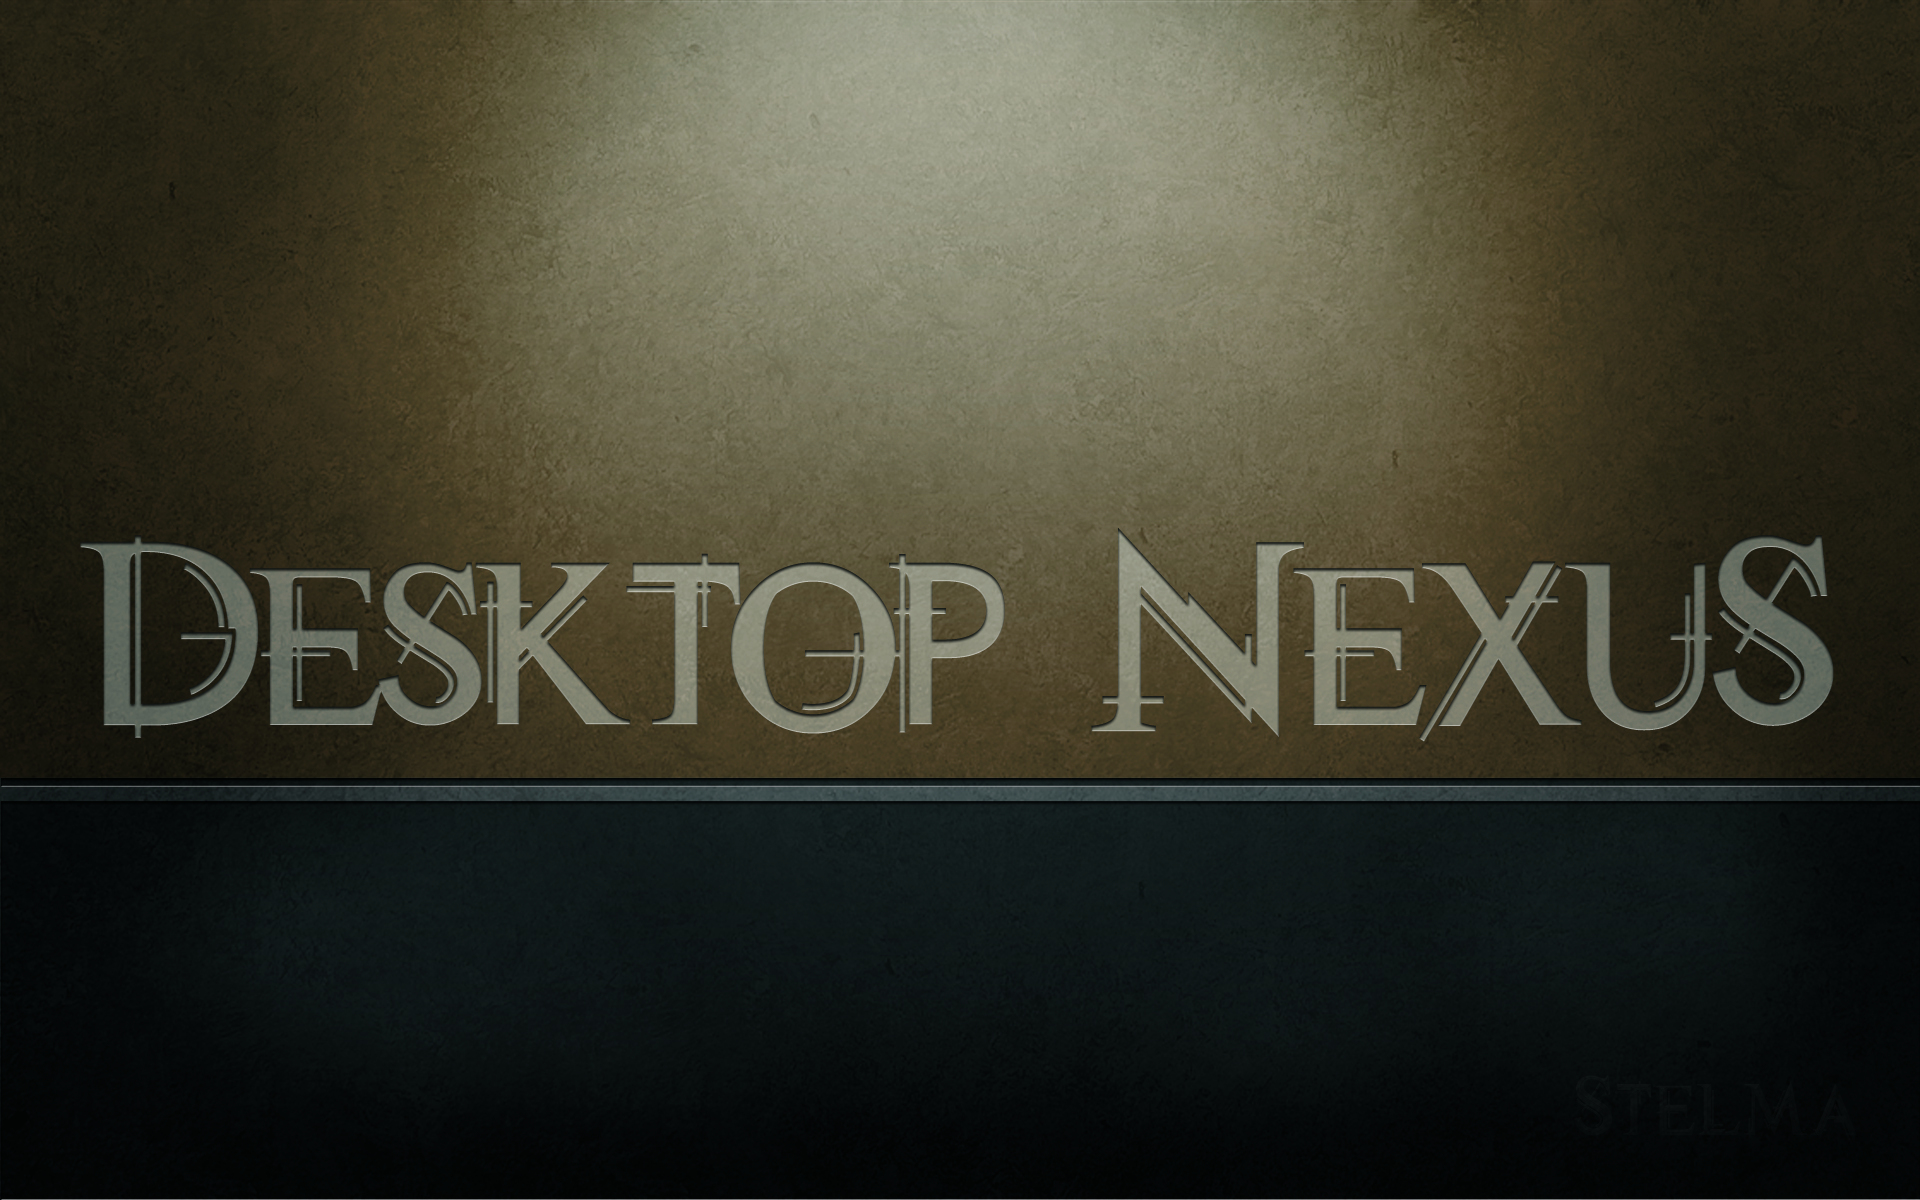 Abstract Desktop Nexus Wallpaper HD Background